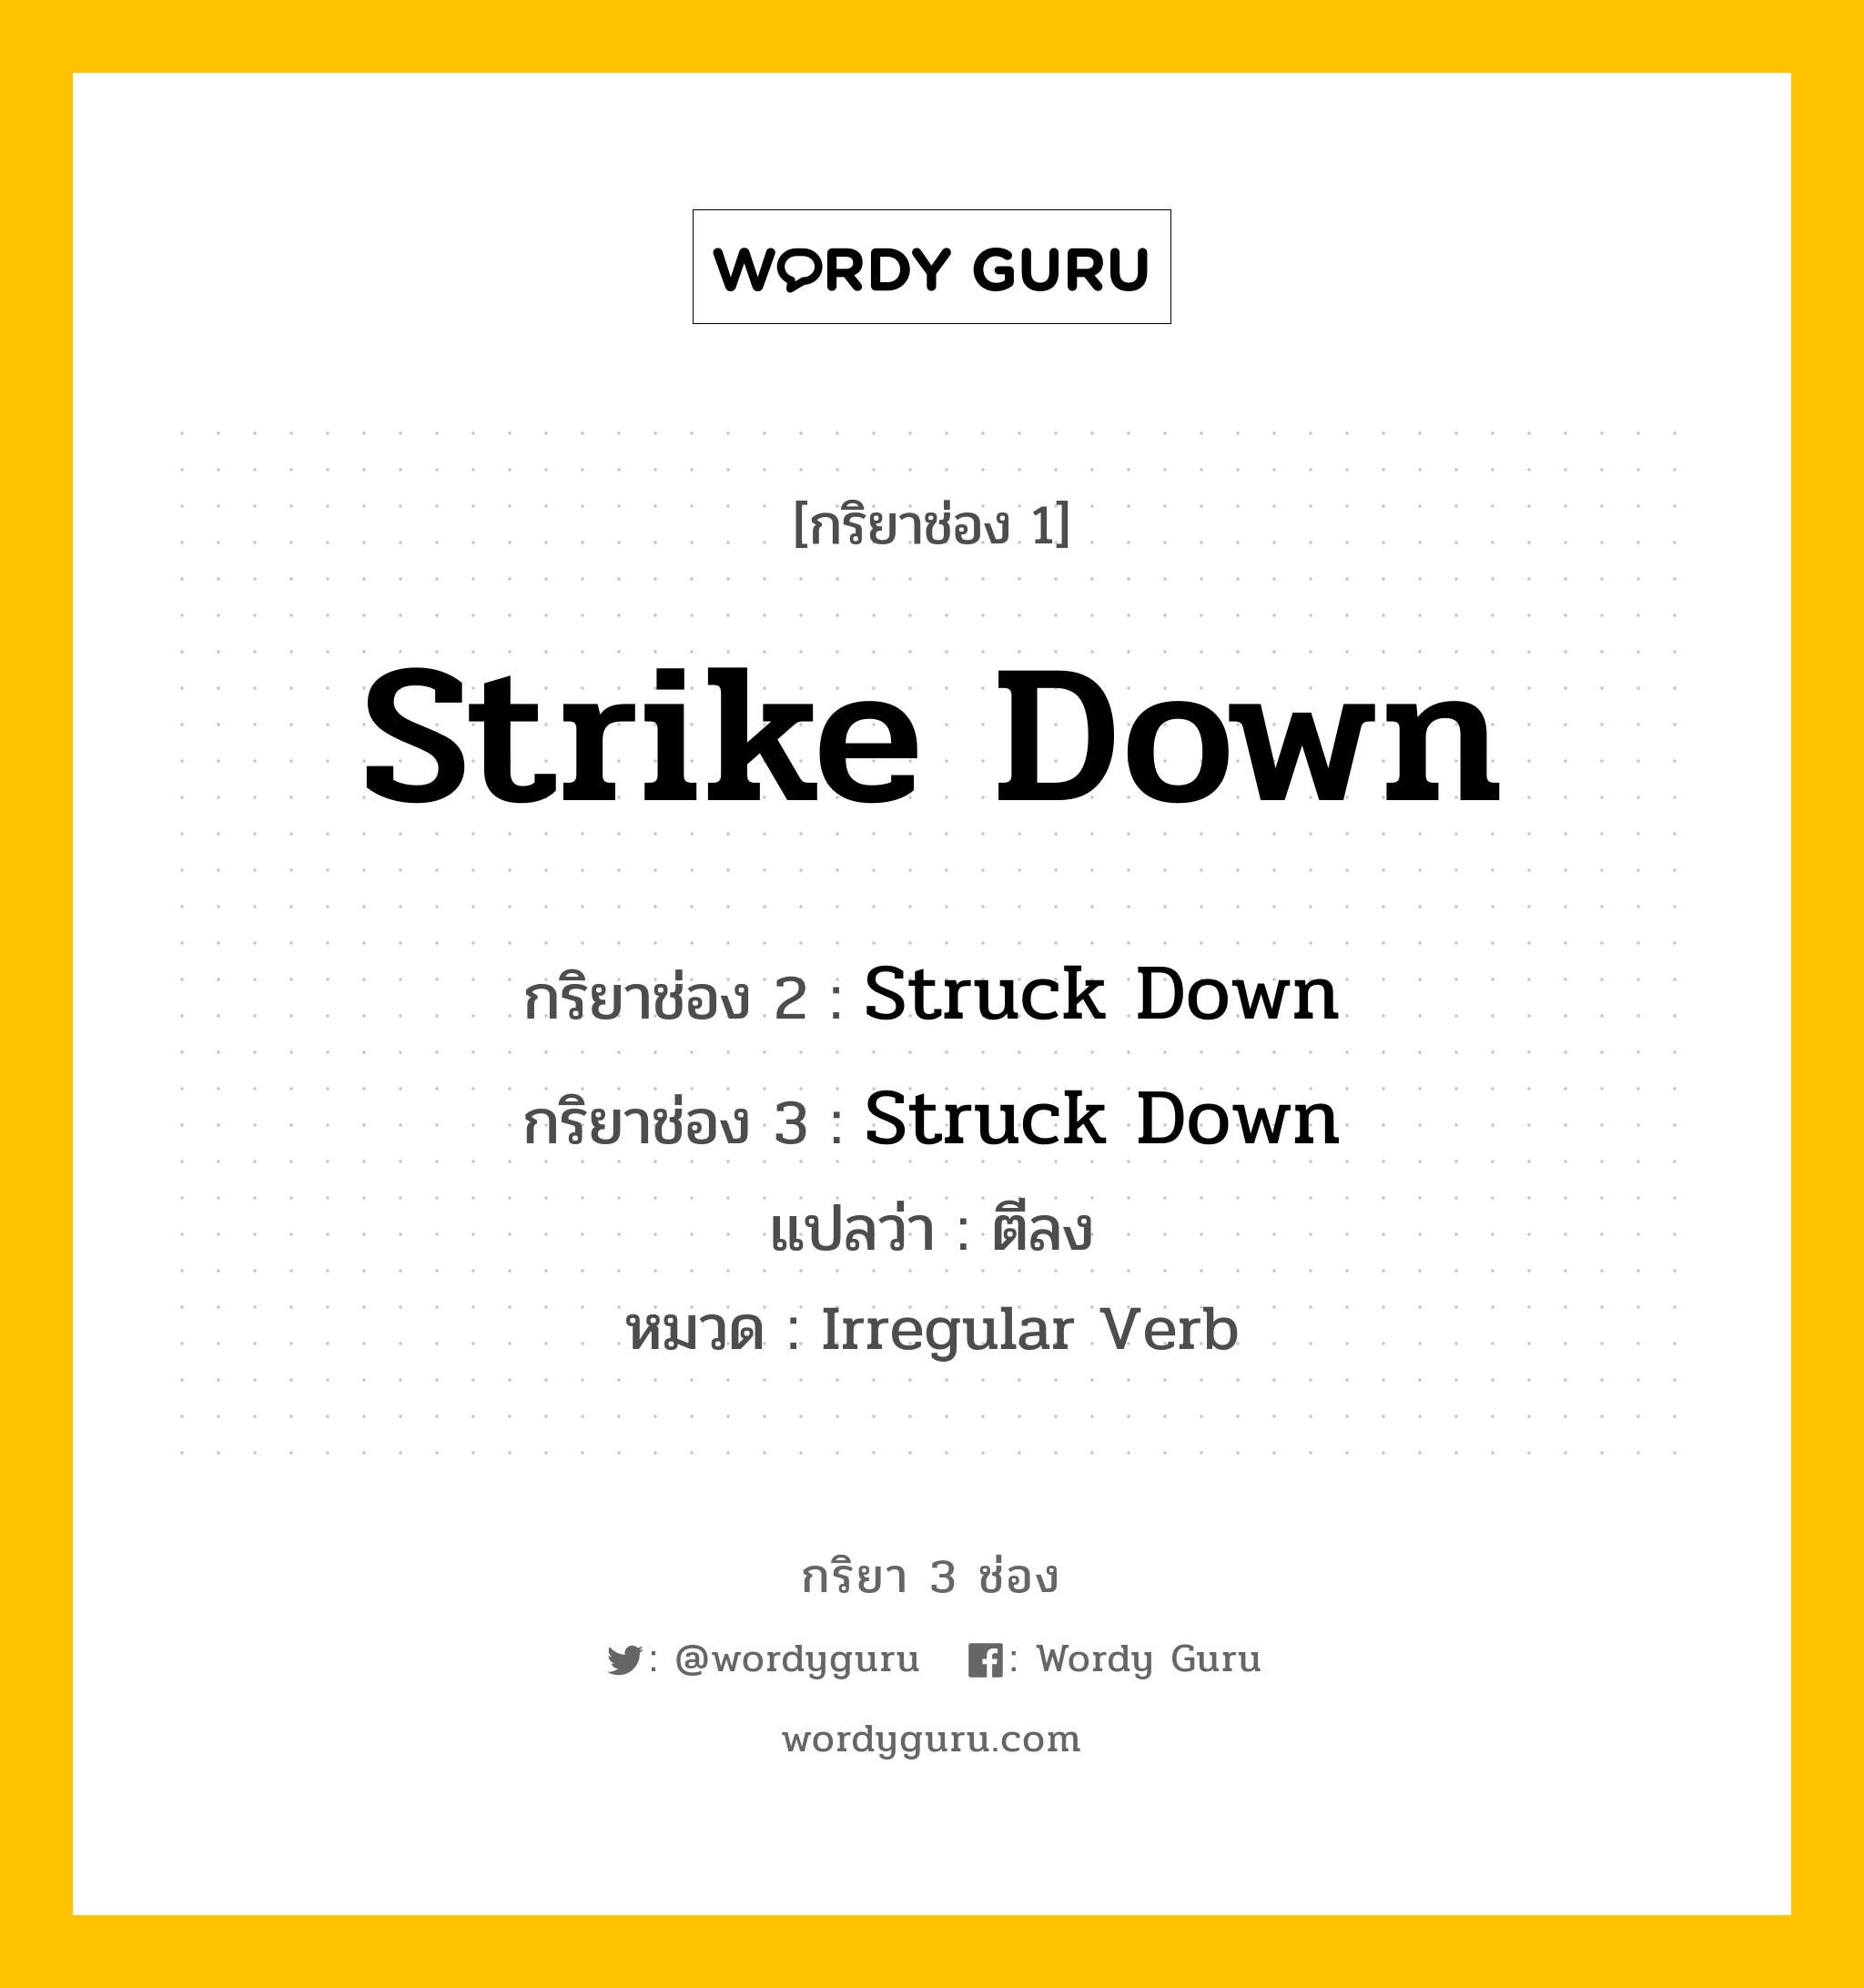 กริยา 3 ช่อง: Strike Down ช่อง 2 Strike Down ช่อง 3 คืออะไร, กริยาช่อง 1 Strike Down กริยาช่อง 2 Struck Down กริยาช่อง 3 Struck Down แปลว่า ตีลง หมวด Irregular Verb หมวด Irregular Verb